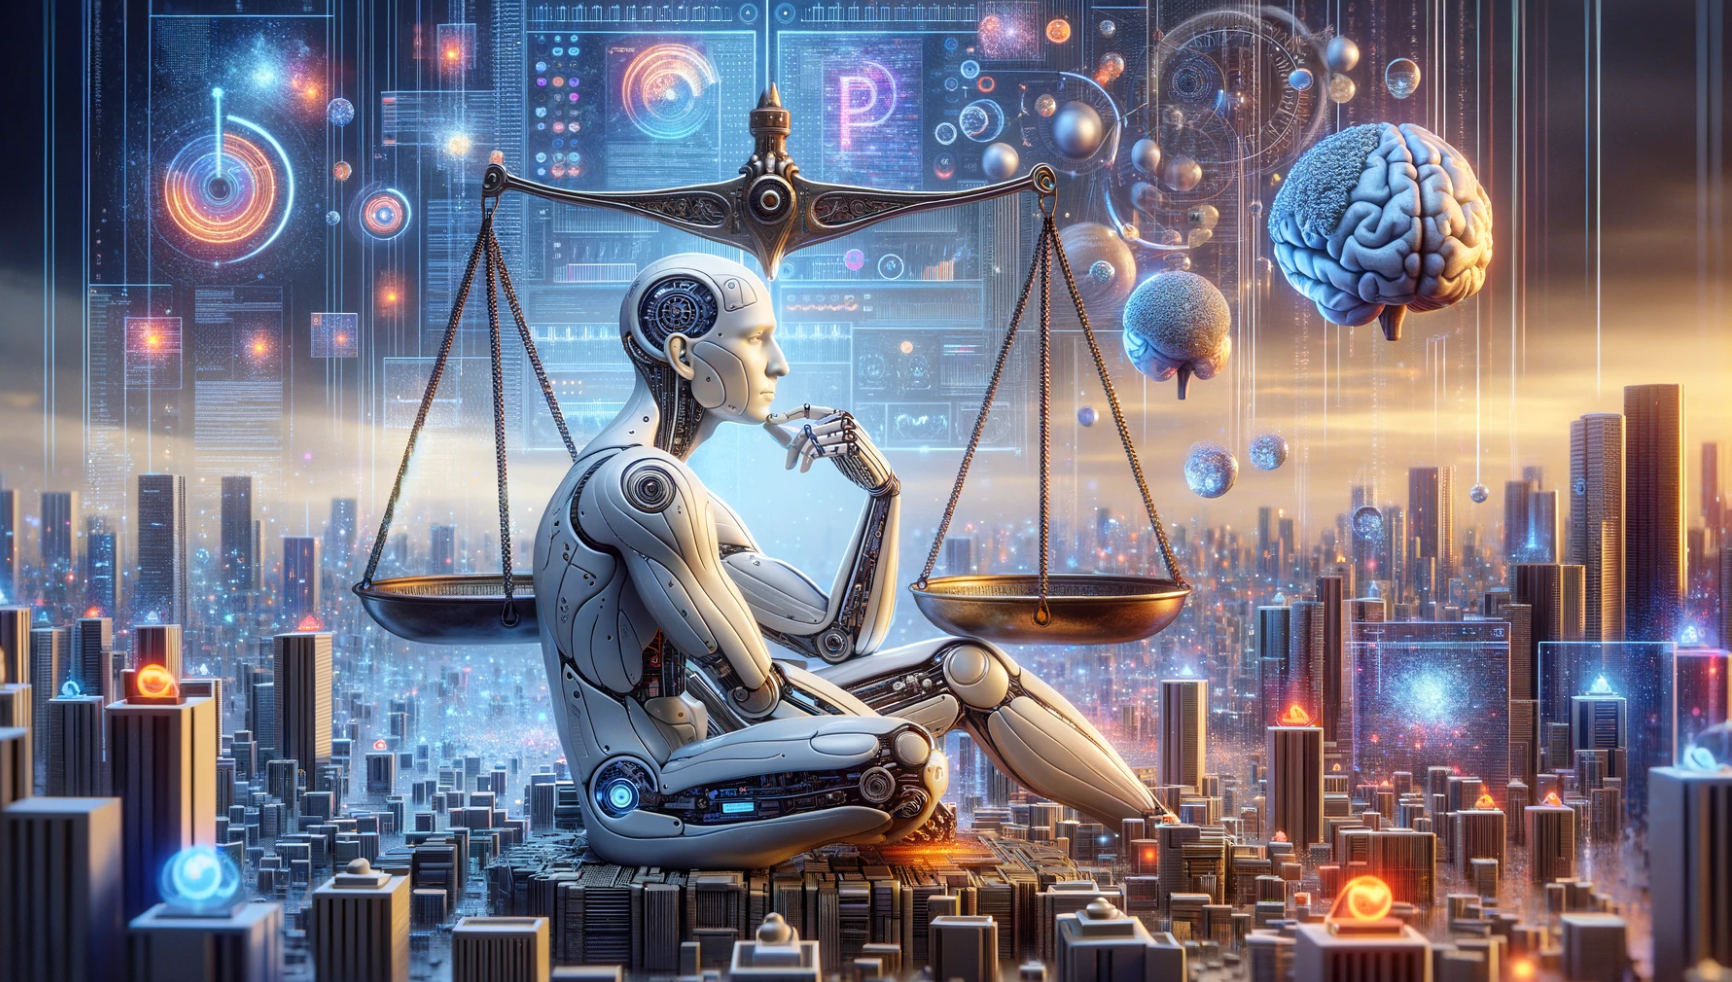 Künstliche Intelligenz, Urheberrecht und die Suche nach ethischen Lösungen